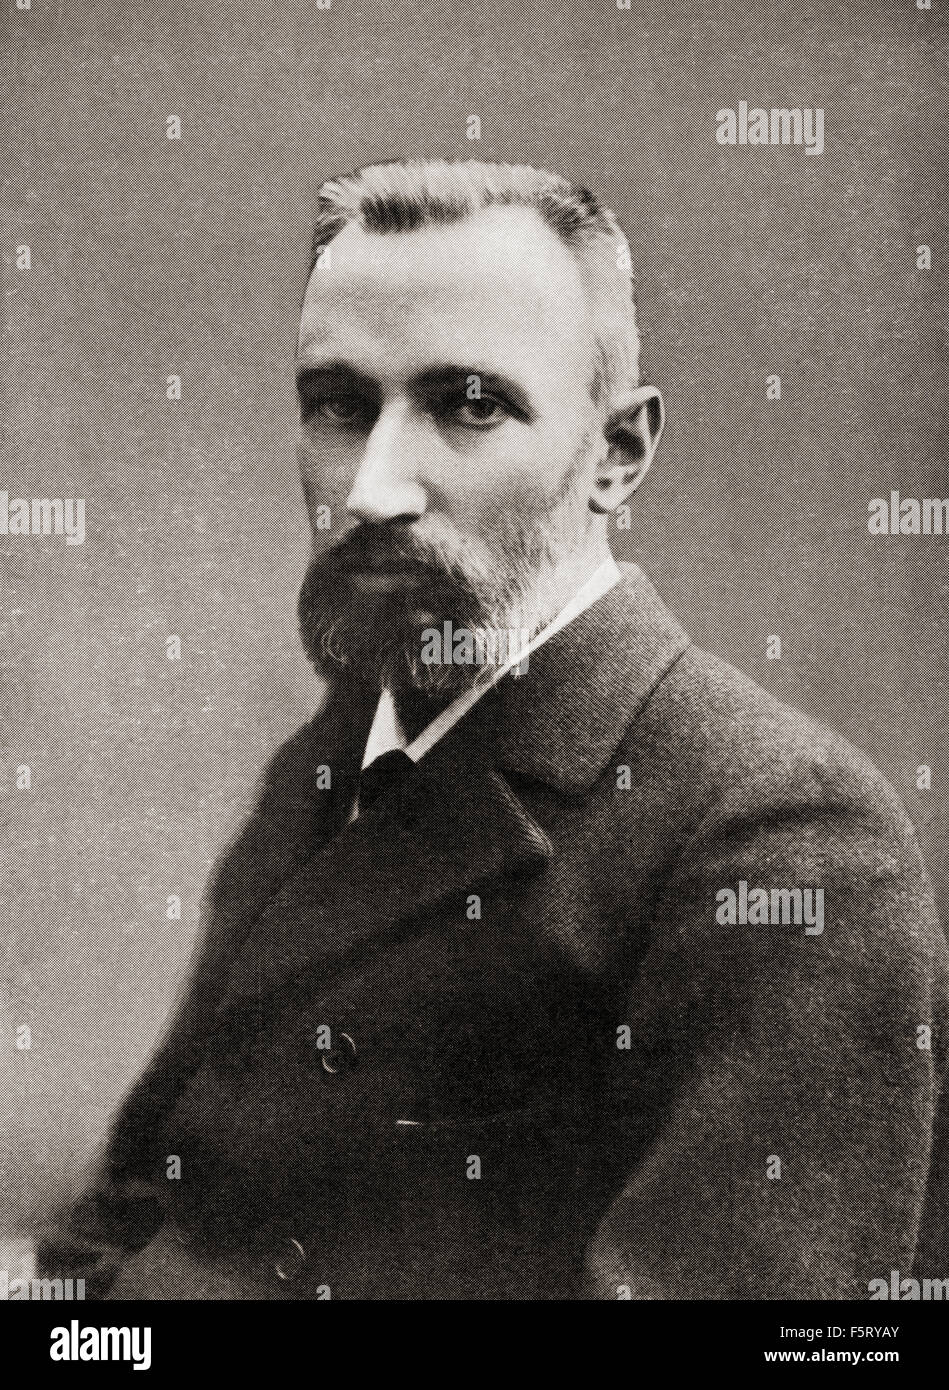 Pierre Curie, 1859 - 1906. Fisico francese, pioniere in cristallografia, magnetismo piezoelettricità e la radioattività. Vincitore del premio 1903 Premio Nobel in fisica. Foto Stock